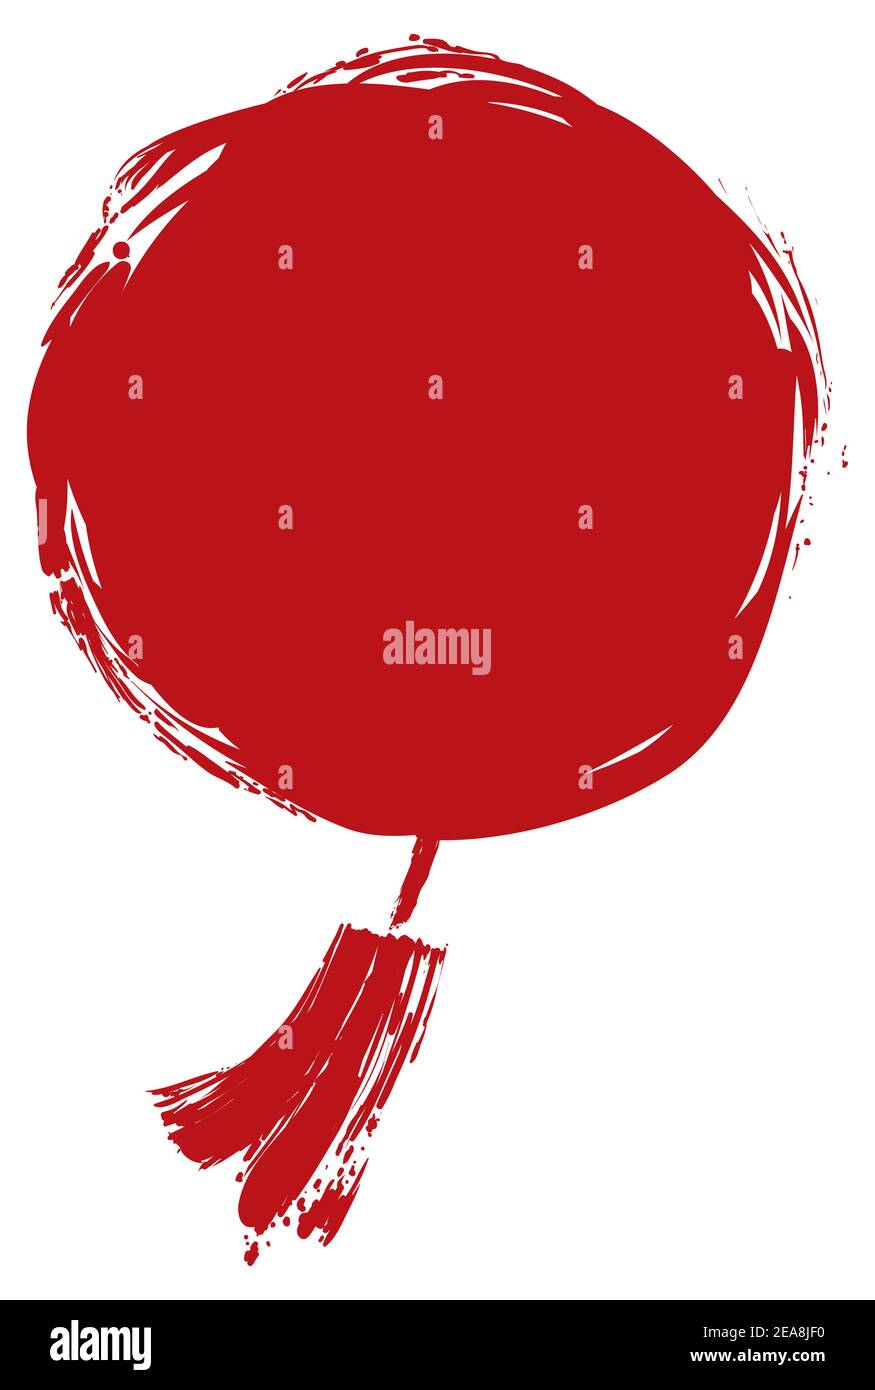 Lanterne chinoise ronde avec corde et franges suspendues en pinceaux rouges, isolée sur fond blanc. Illustration de Vecteur